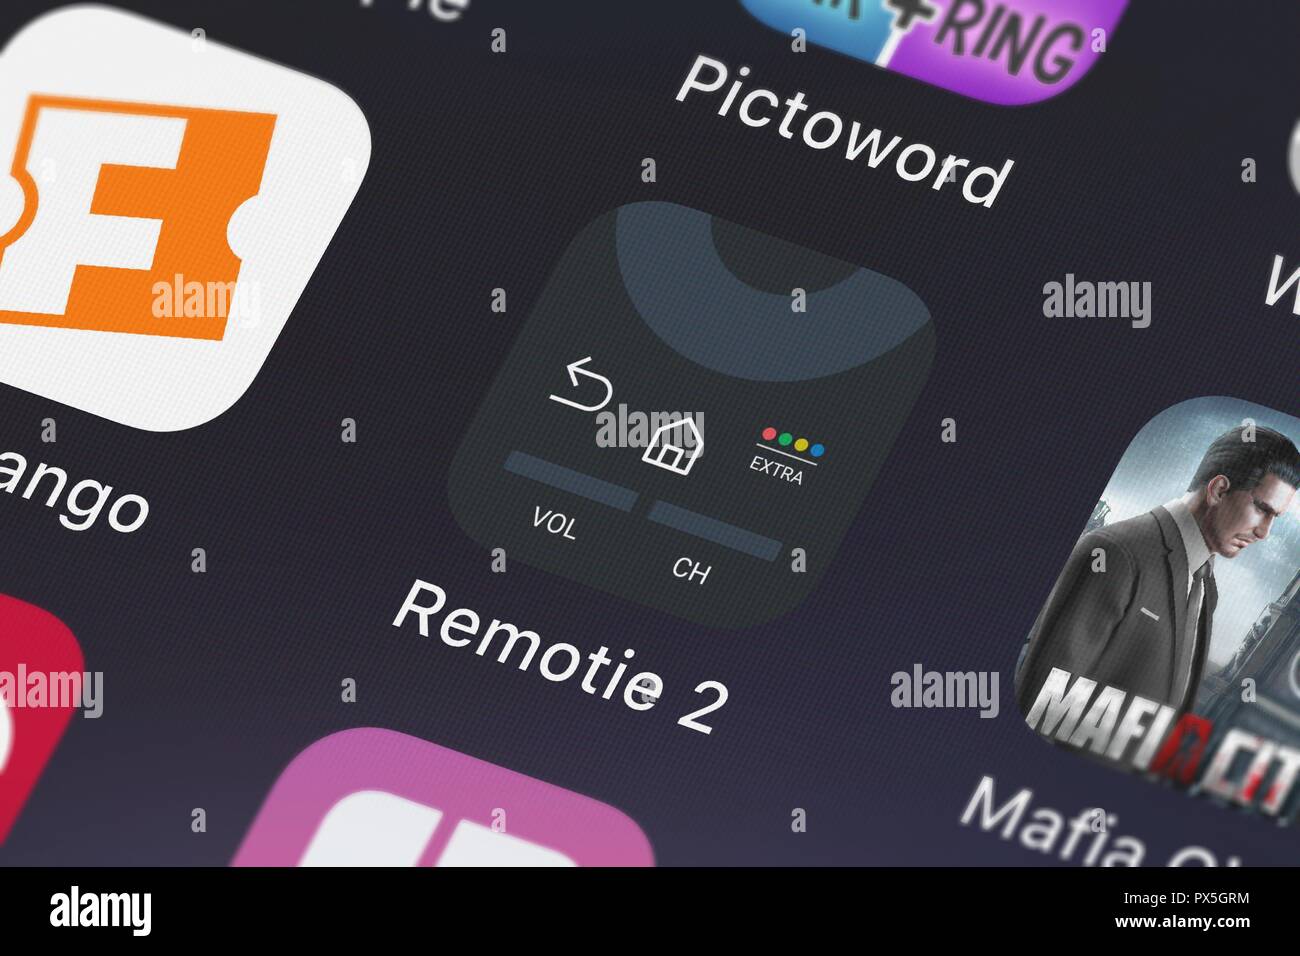 London, Großbritannien, 19. Oktober 2018: Die Remotie 2: Samsung TV-Fernbedienung mobile App von Kraftwerk 9 Inc auf einem iPhone Bildschirm. Stockfoto